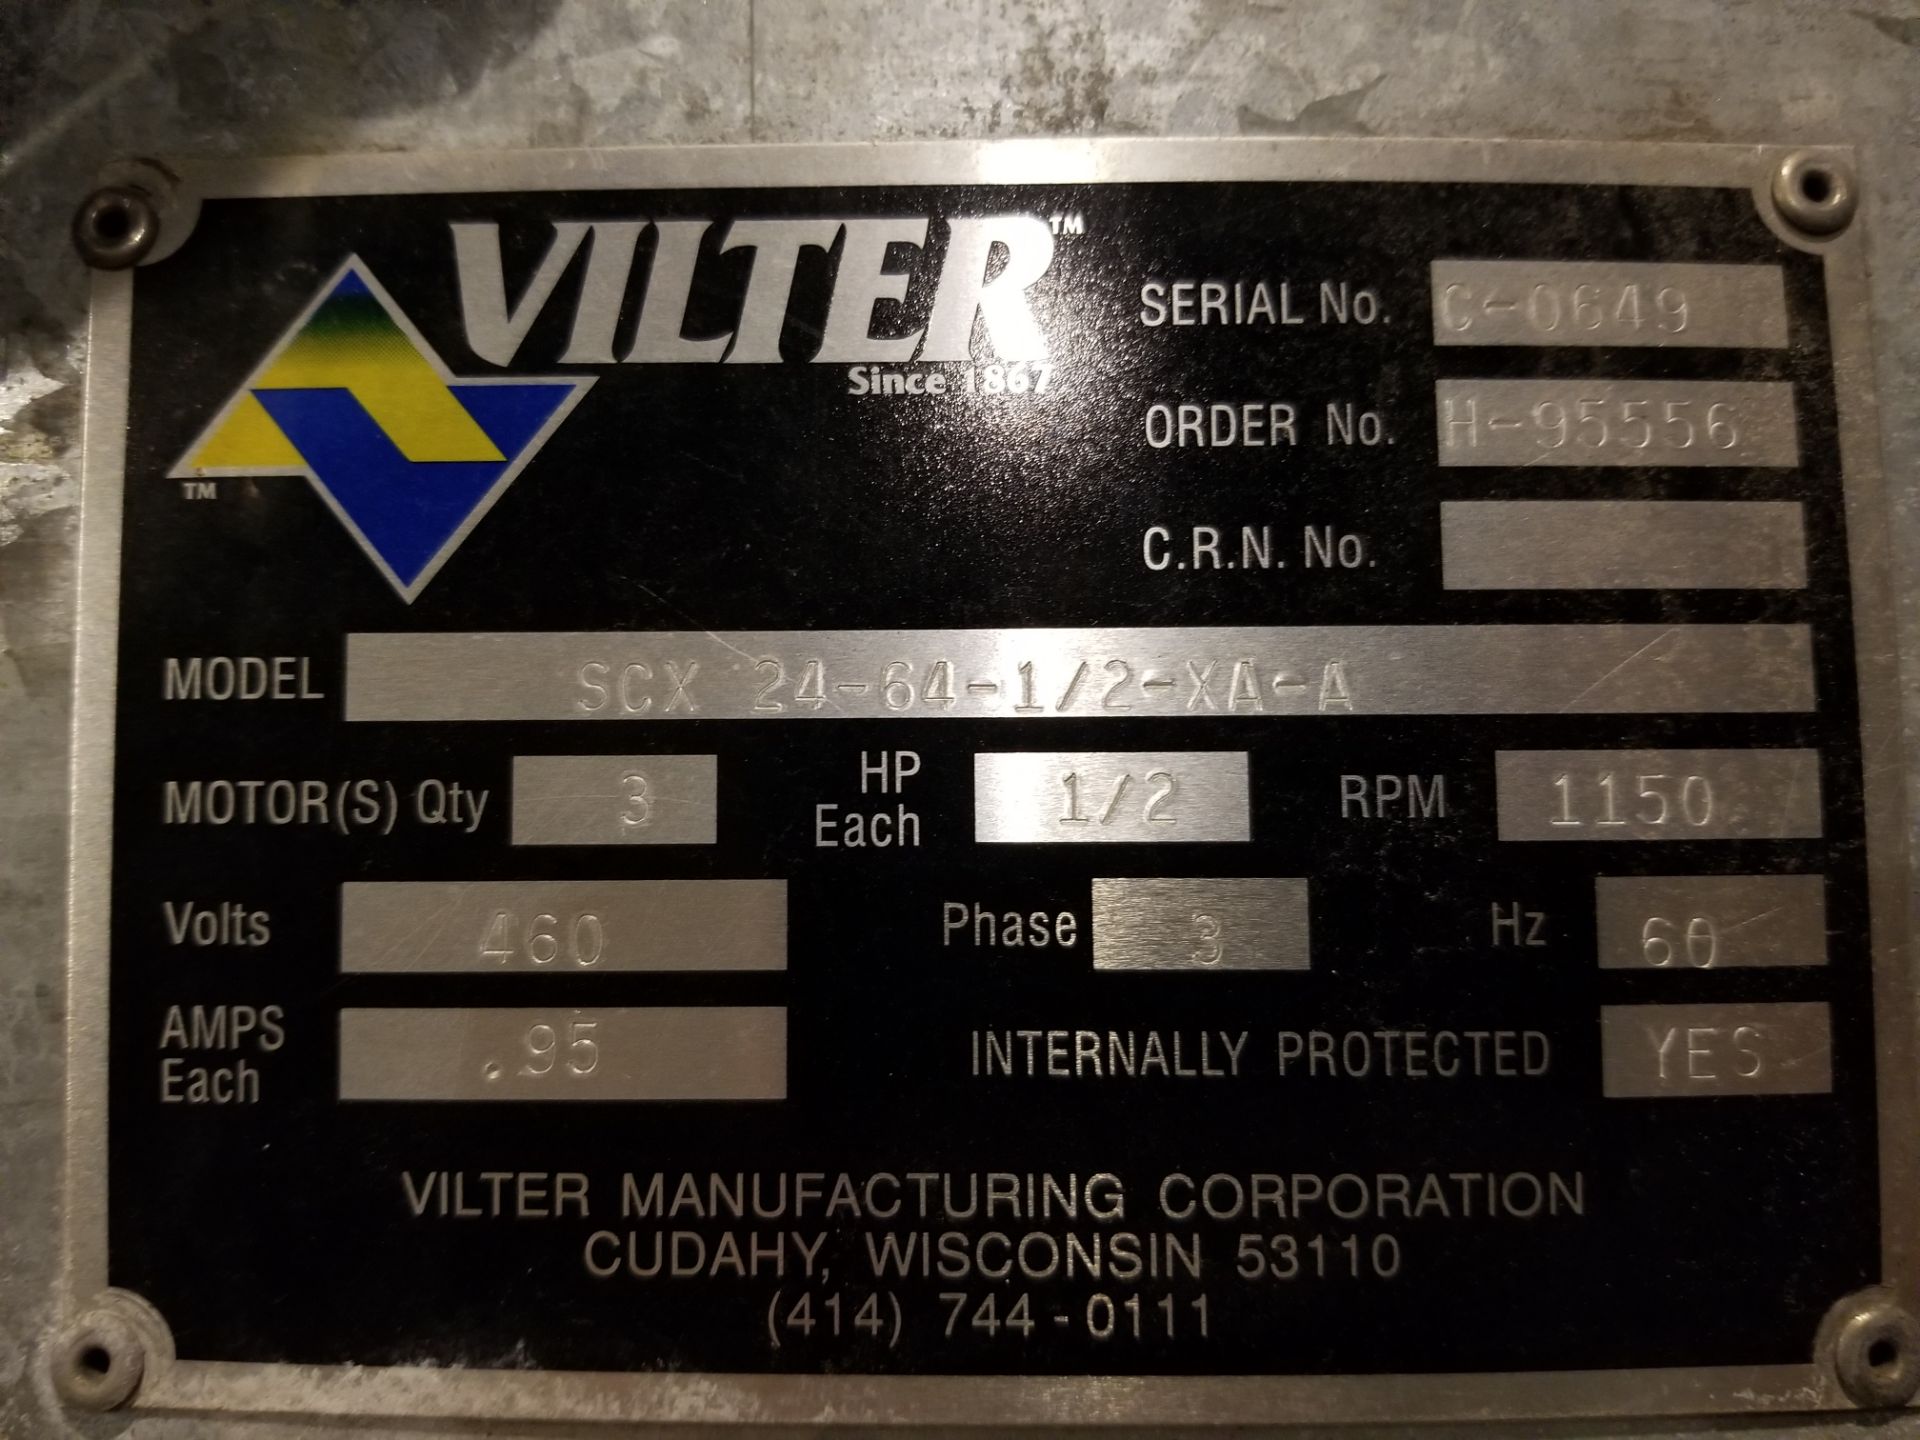 Vilter Cooler Model: SCX 24-64-1/2-XA-A Serial: C-0649 Order No: H-95556 3 Motors - 1/2 HP each, 460 - Image 2 of 2